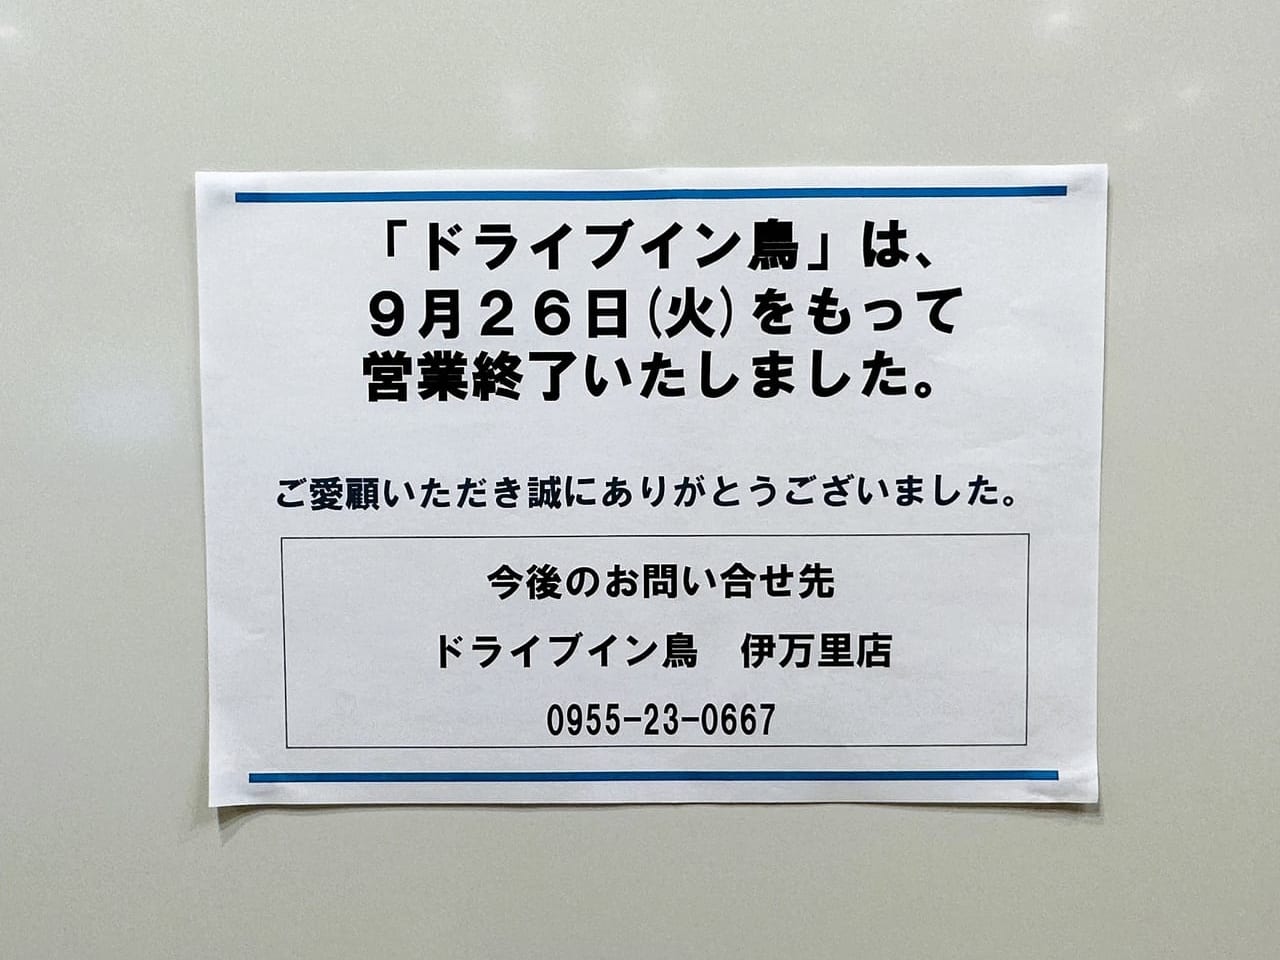 福岡市内唯一の『ドライブイン鳥』が、９月２６日で閉店していました。